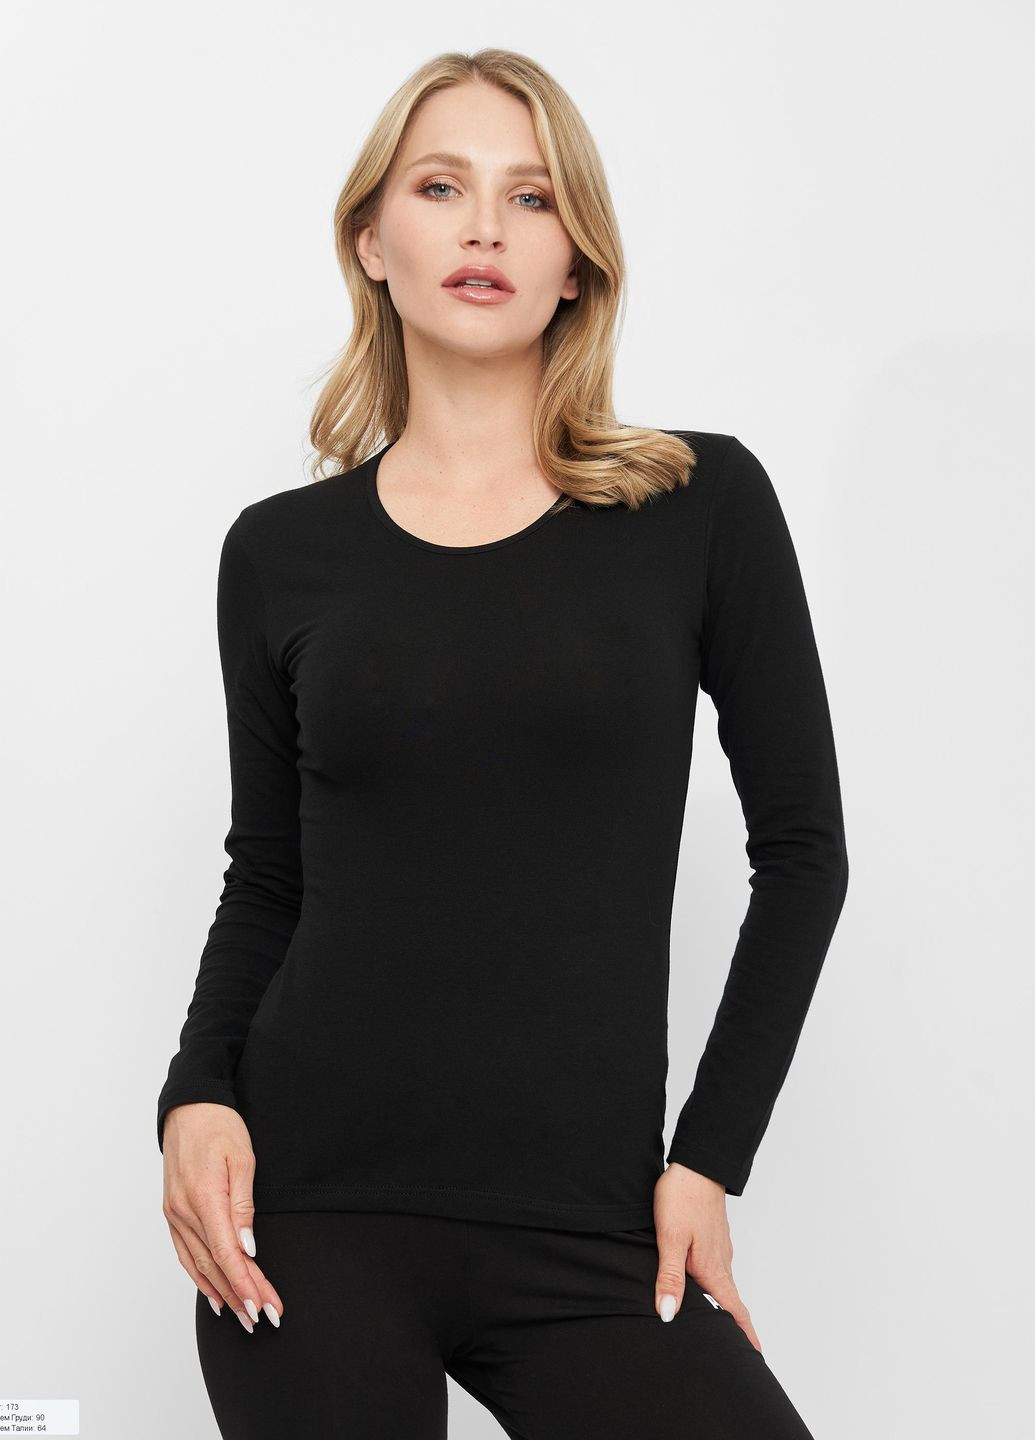 Чорна всесезон футболка з довг рукавом t-shirt manica lunga girocollo чорний жіноча l Kappa